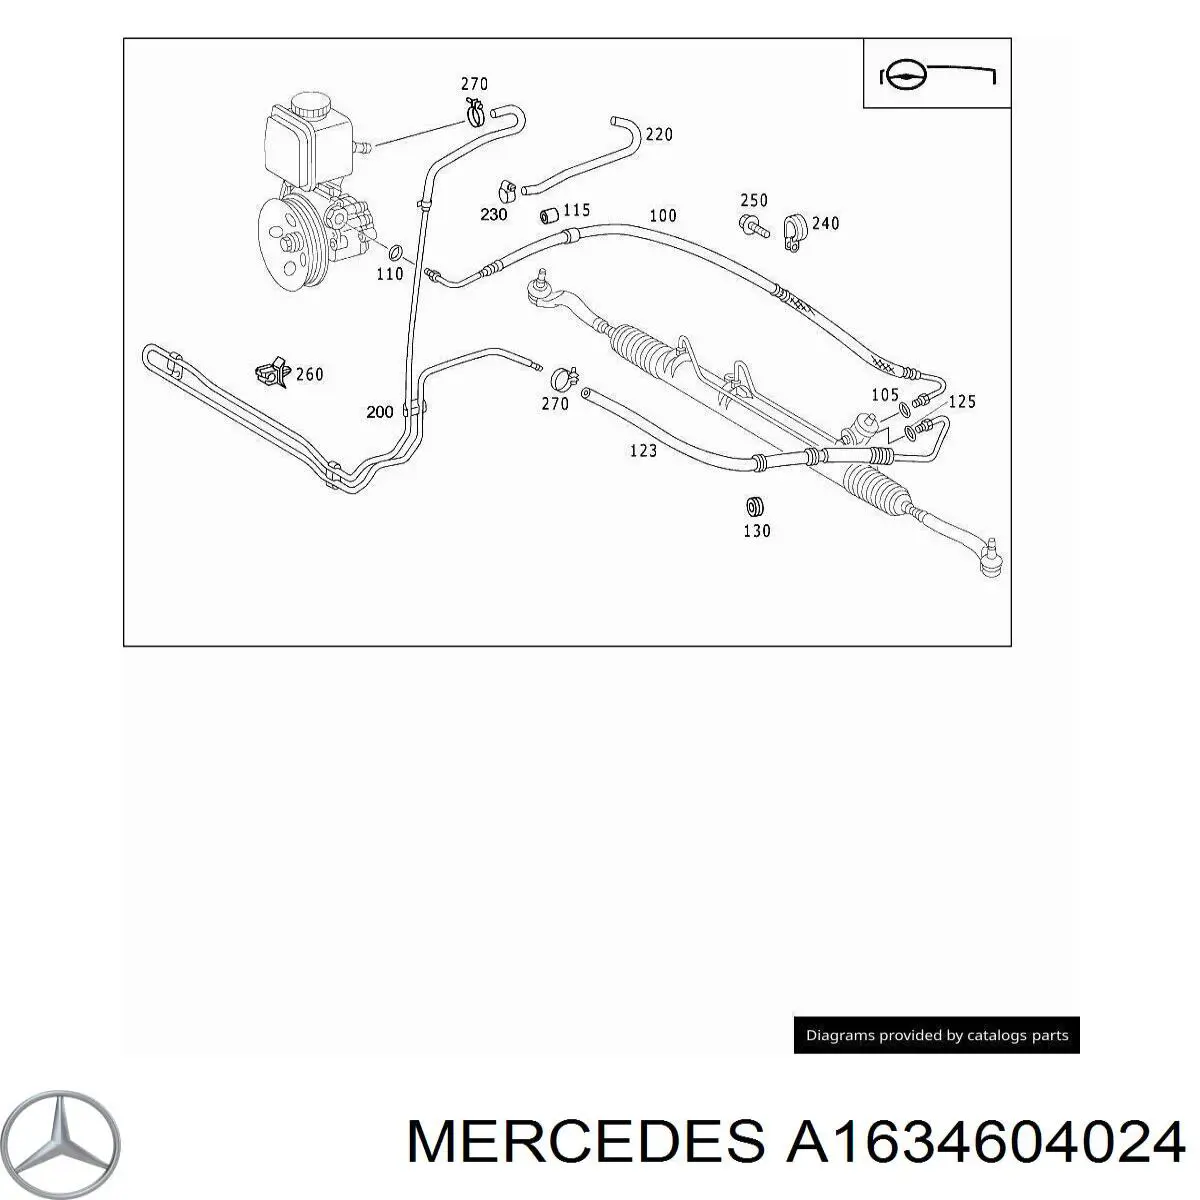 Mangueira da Direção hidrâulica assistida de pressão alta desde a bomba até a régua (do mecanismo) para Mercedes ML/GLE (W163)